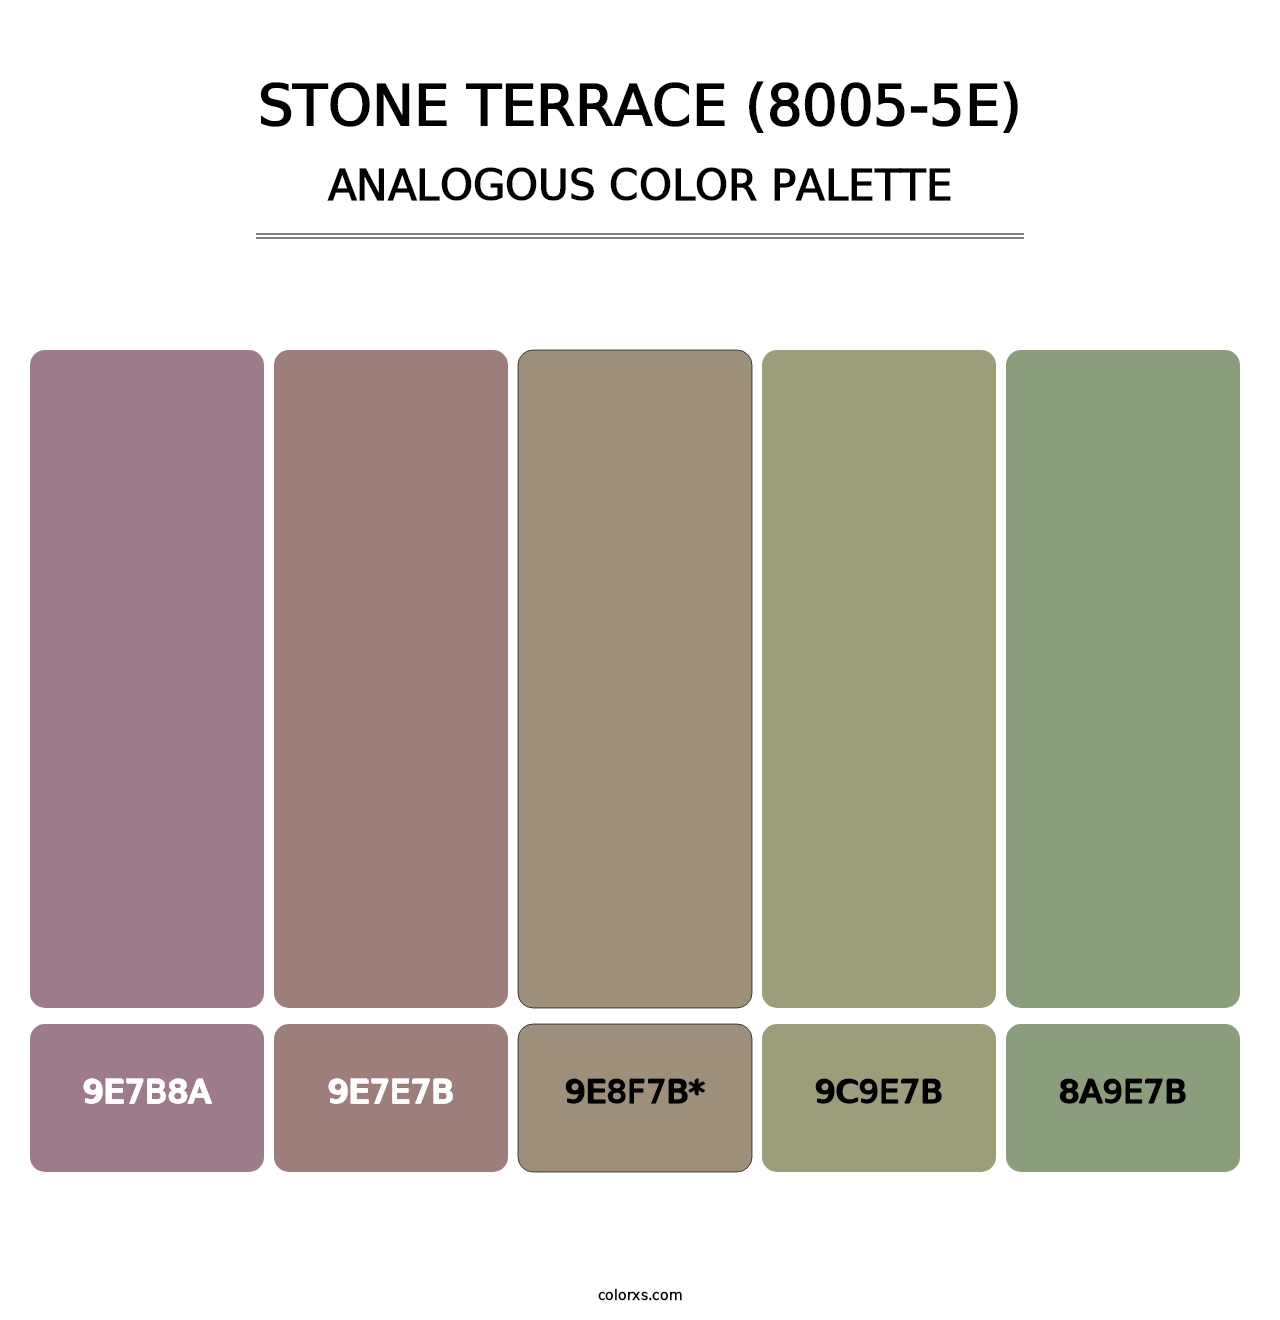 Stone Terrace (8005-5E) - Analogous Color Palette